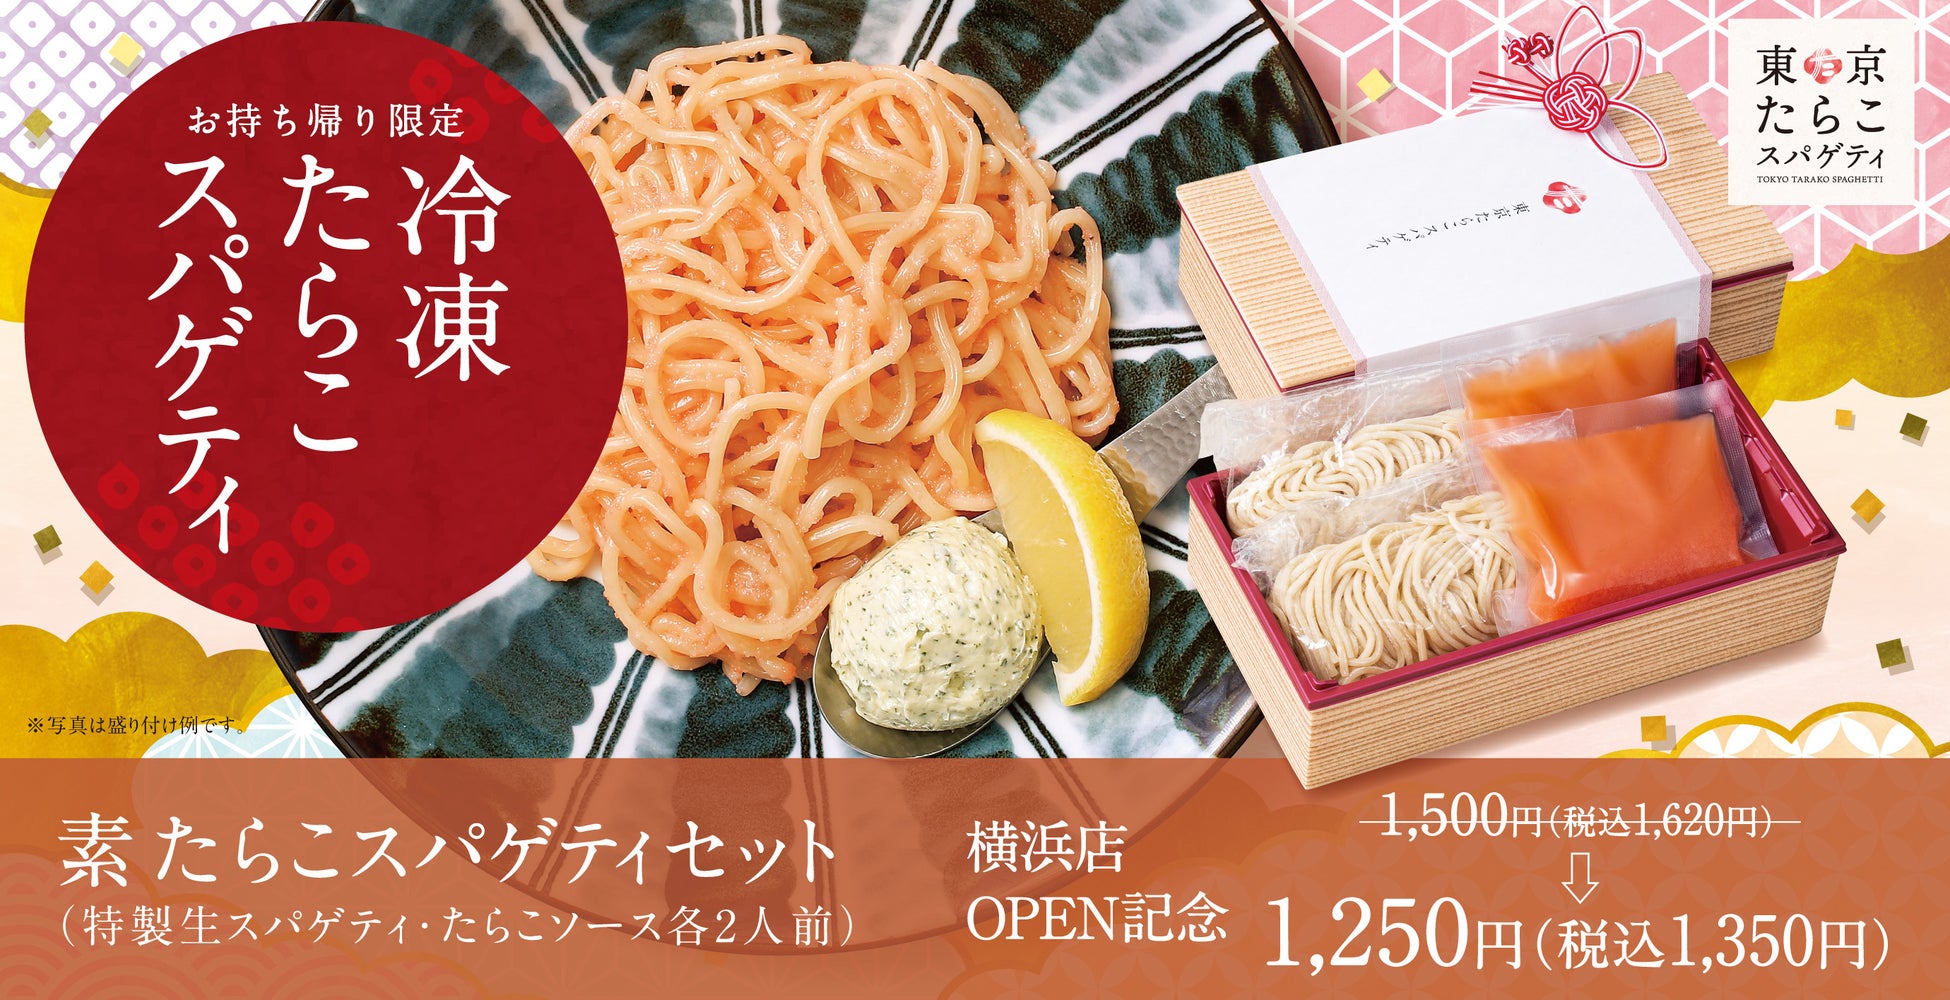 【はじめまして】東京たらこスパゲティ横浜店OPEN記念「素たらこスパゲティセット」販売開始